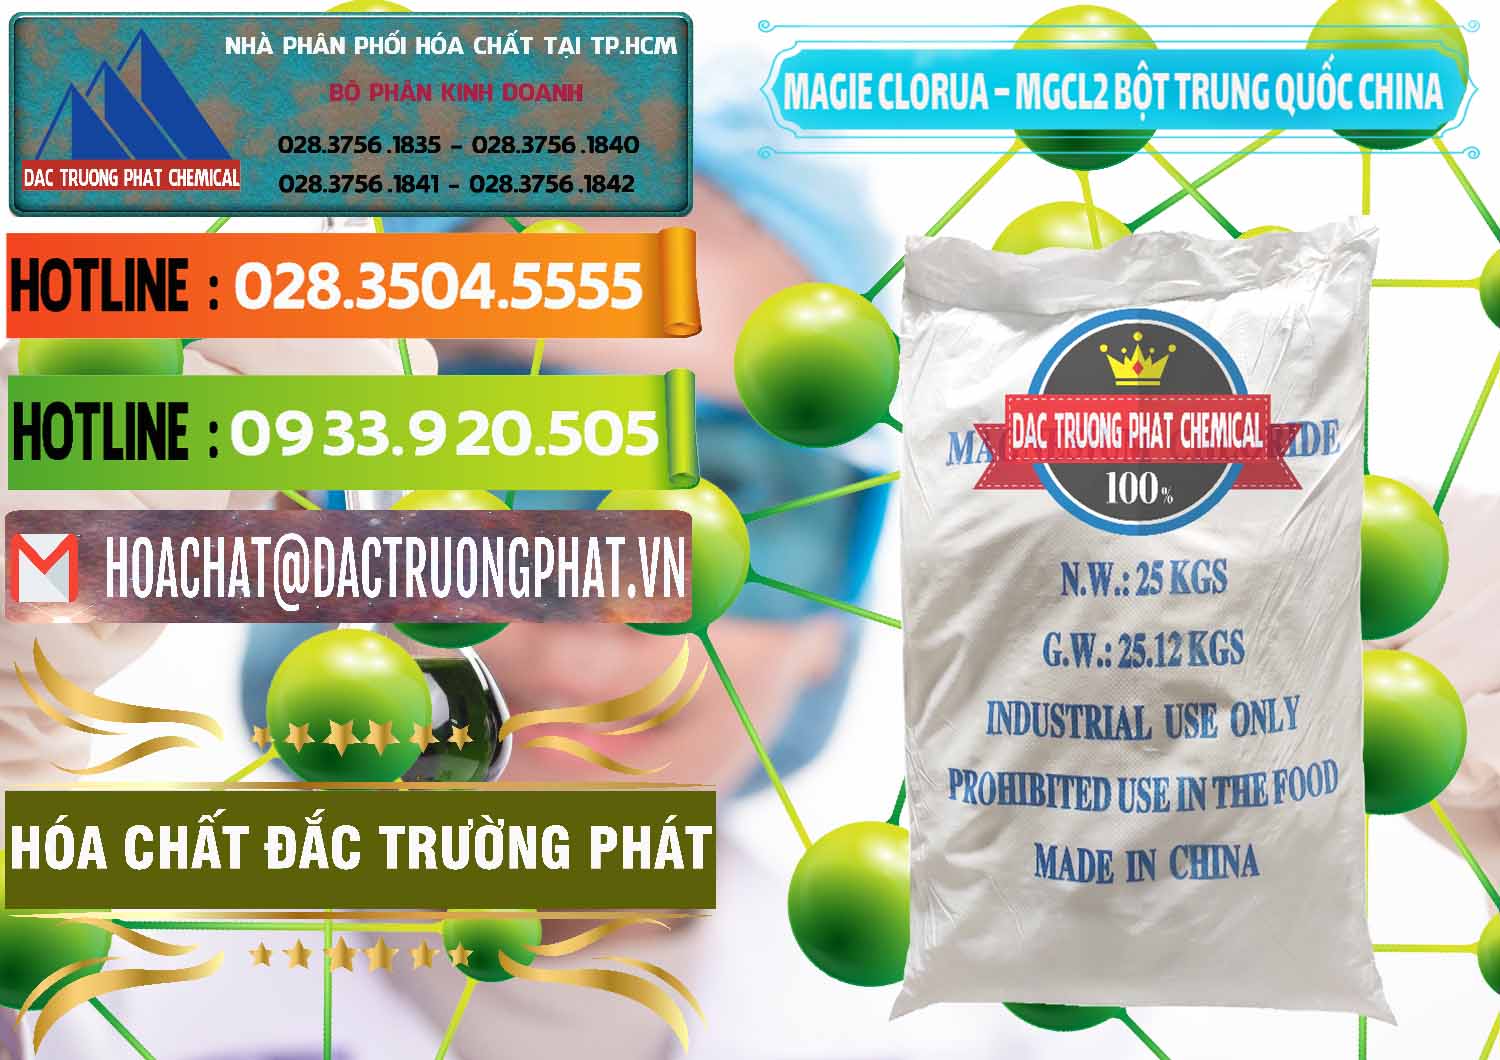 Công ty chuyên bán & phân phối Magie Clorua – MGCL2 96% Dạng Bột Bao Chữ Xanh Trung Quốc China - 0207 - Cty phân phối & cung cấp hóa chất tại TP.HCM - cungcaphoachat.com.vn